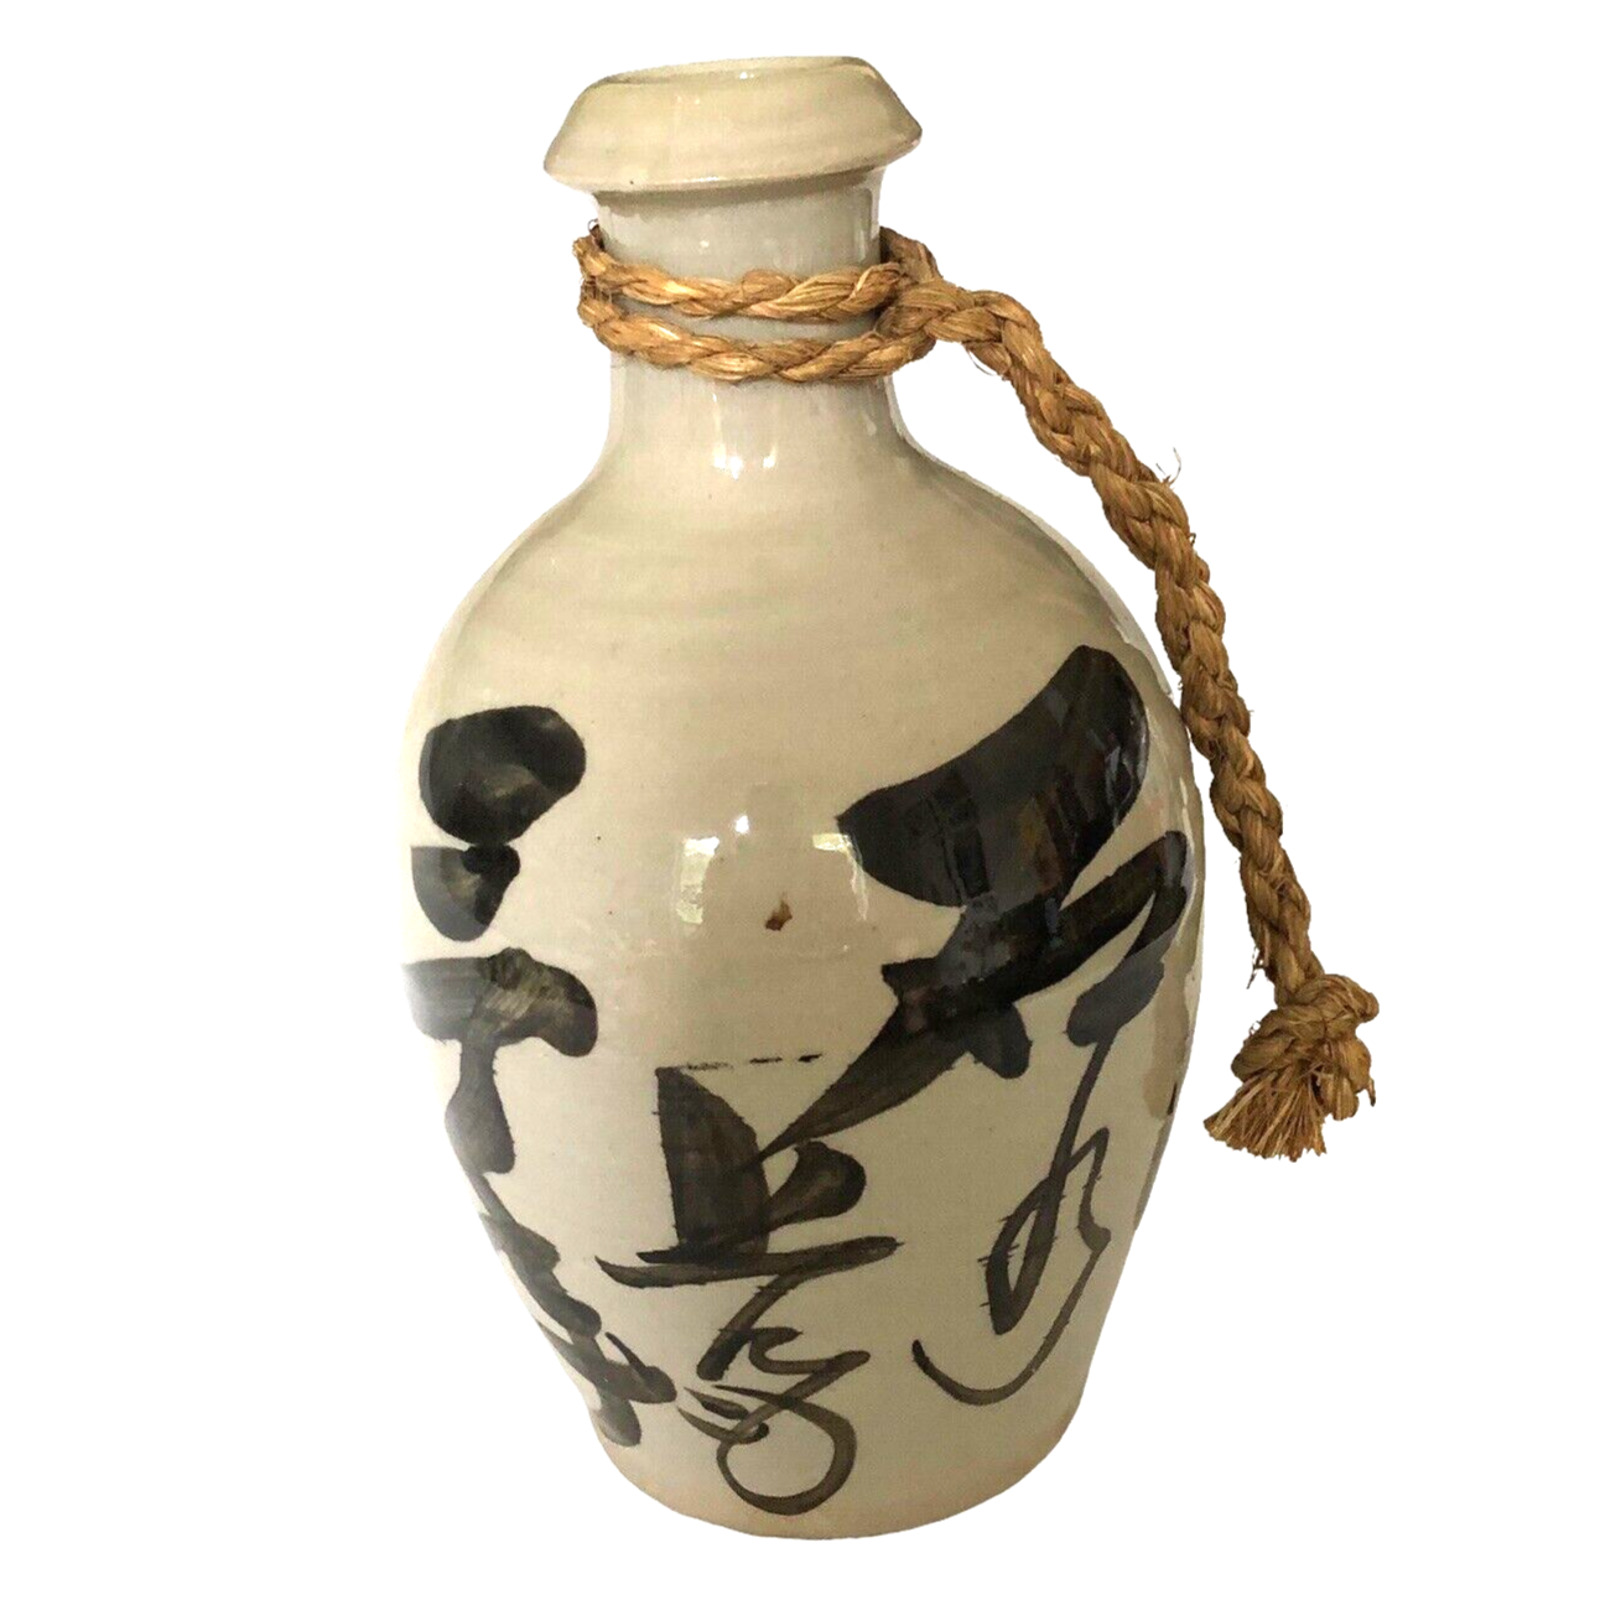 Antique Japanese Ceramic Porcelain Sake Bottle Grey Classic Style Writing EUC